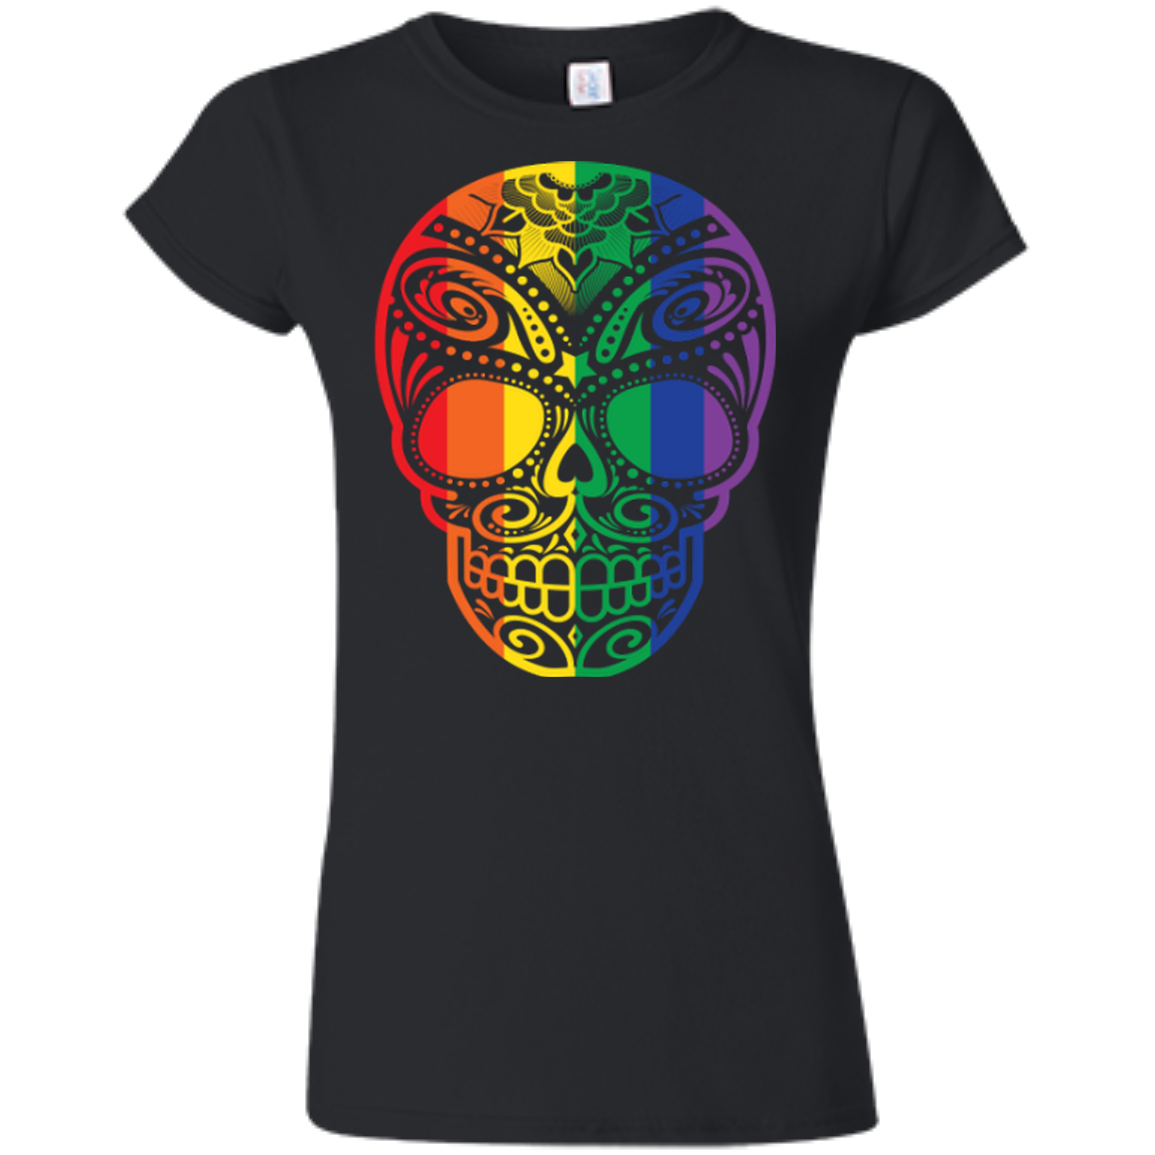 Rainbow Skull black T Shirt for women  LGBT Pride Tshirt